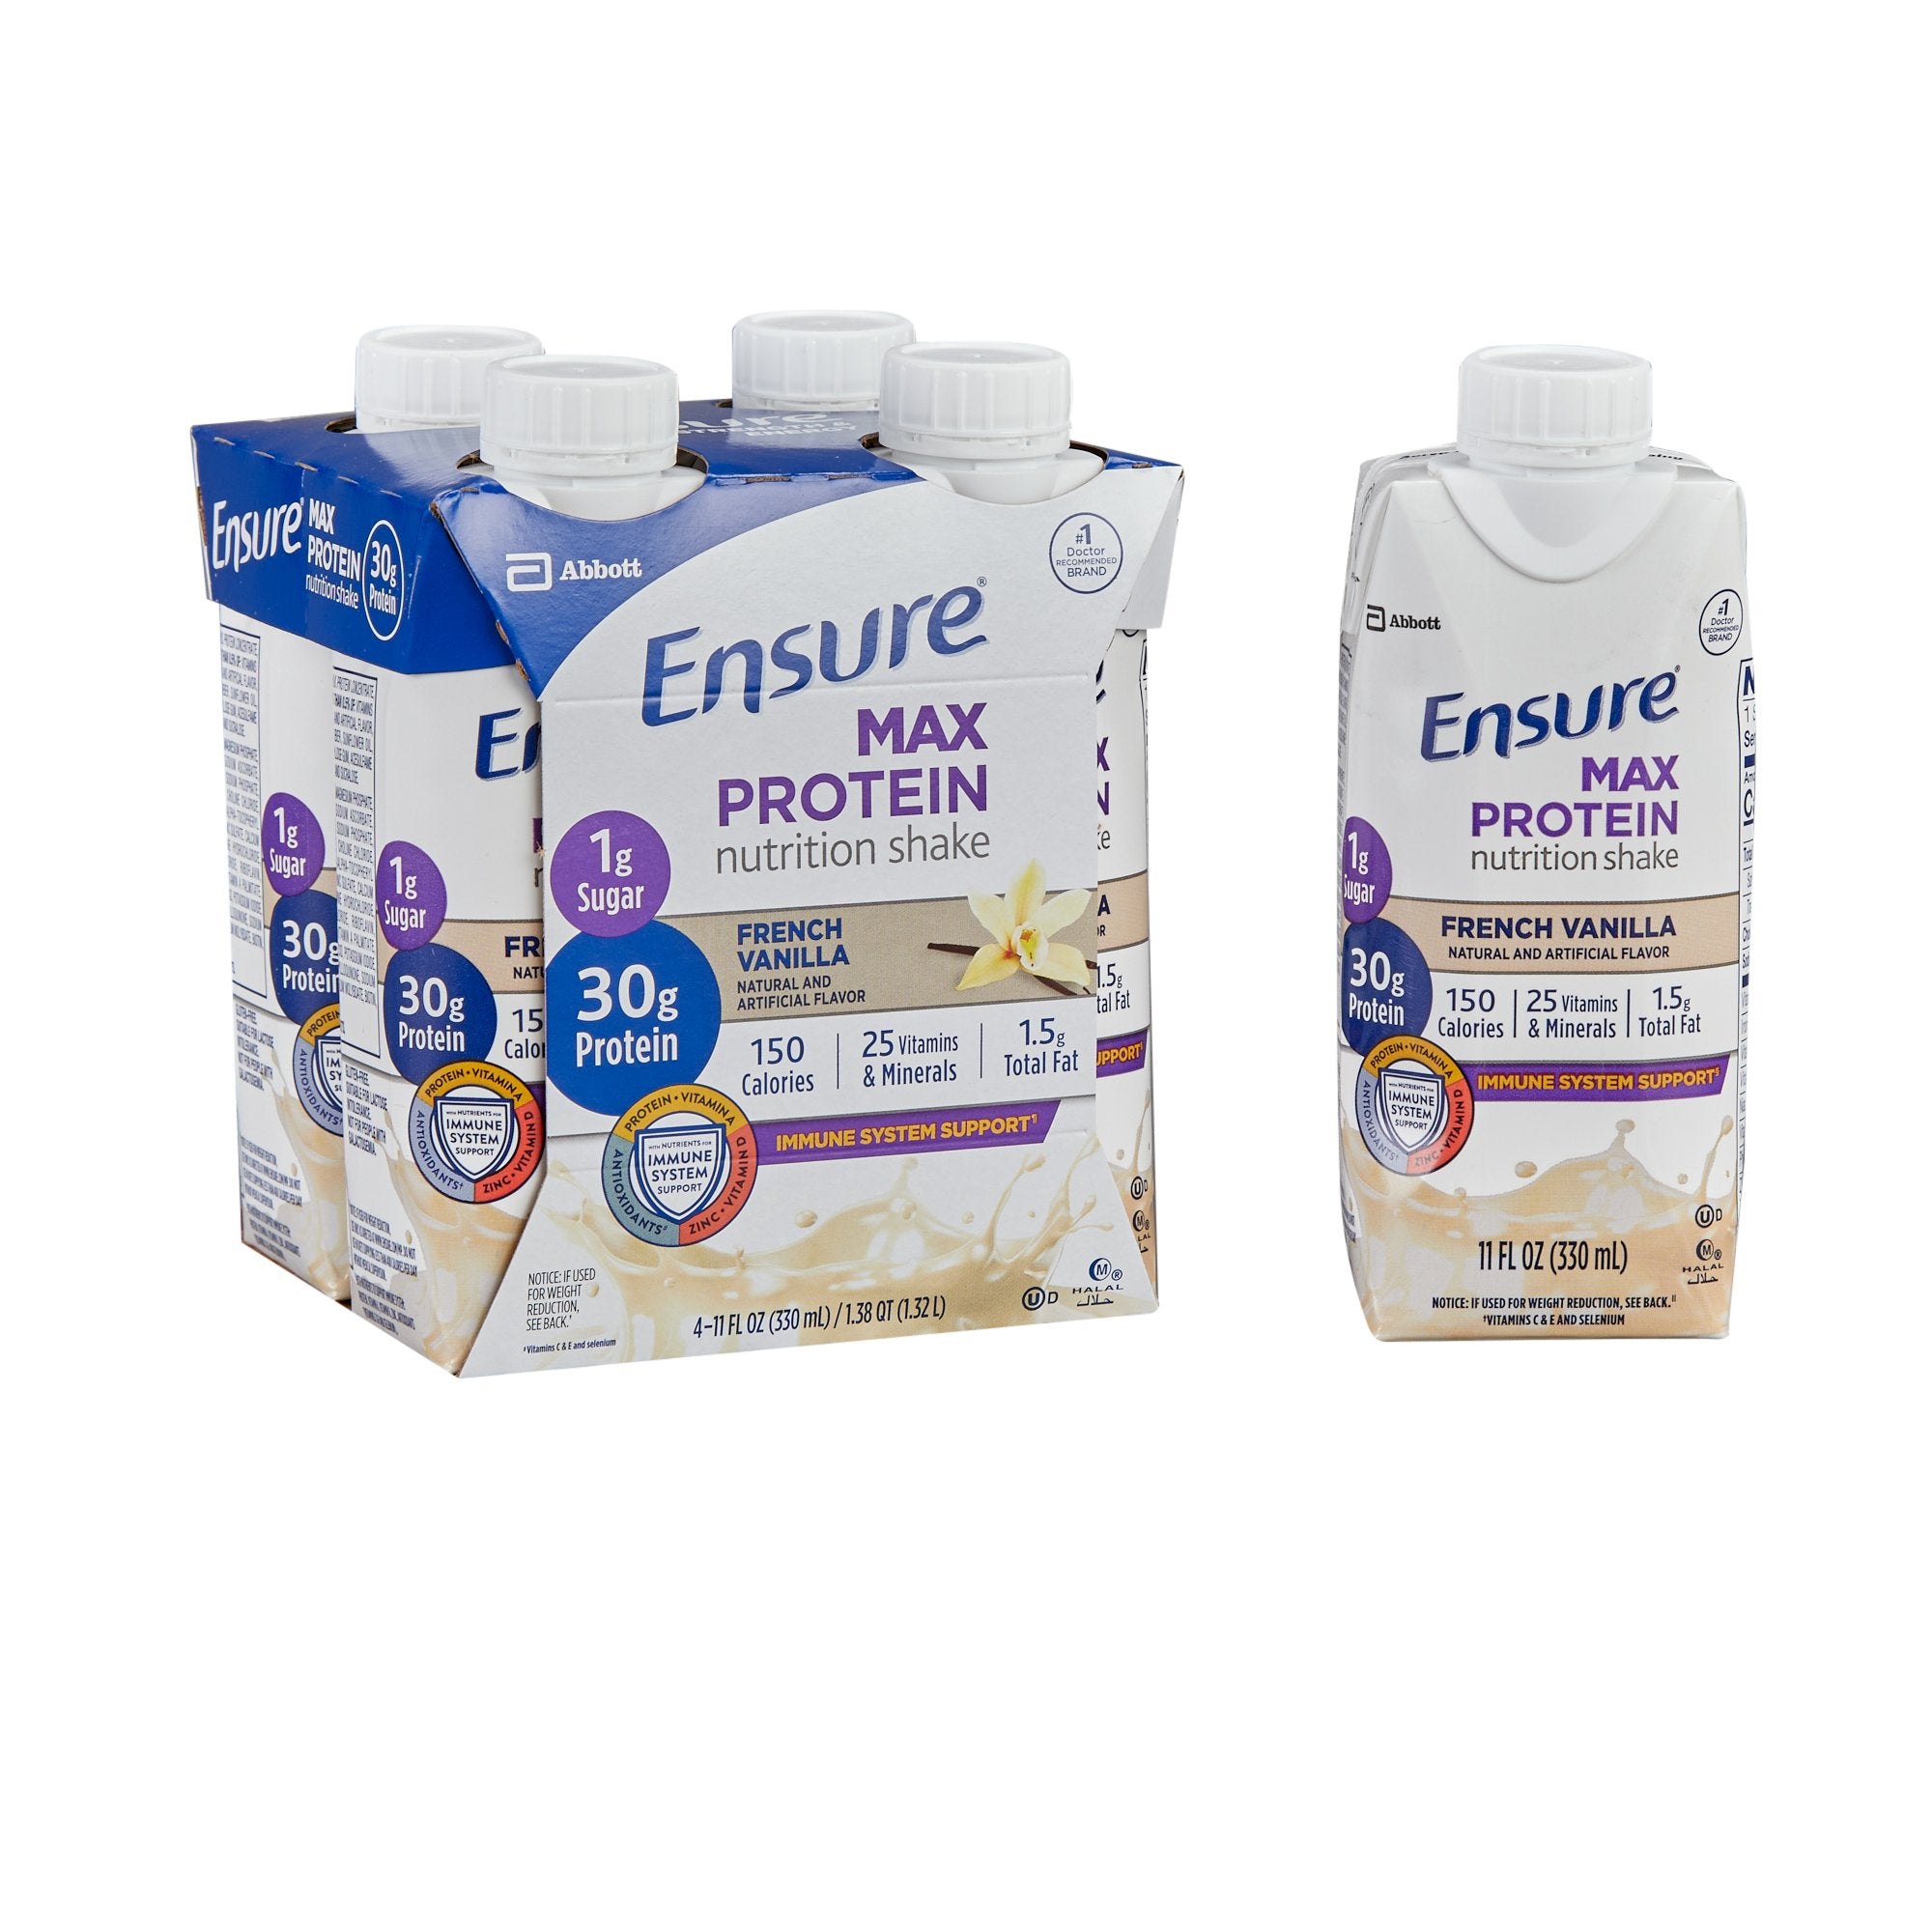 Ensure Max Protein Nutrition Shake, Vanilla, 11 oz. Carton -Case of 12